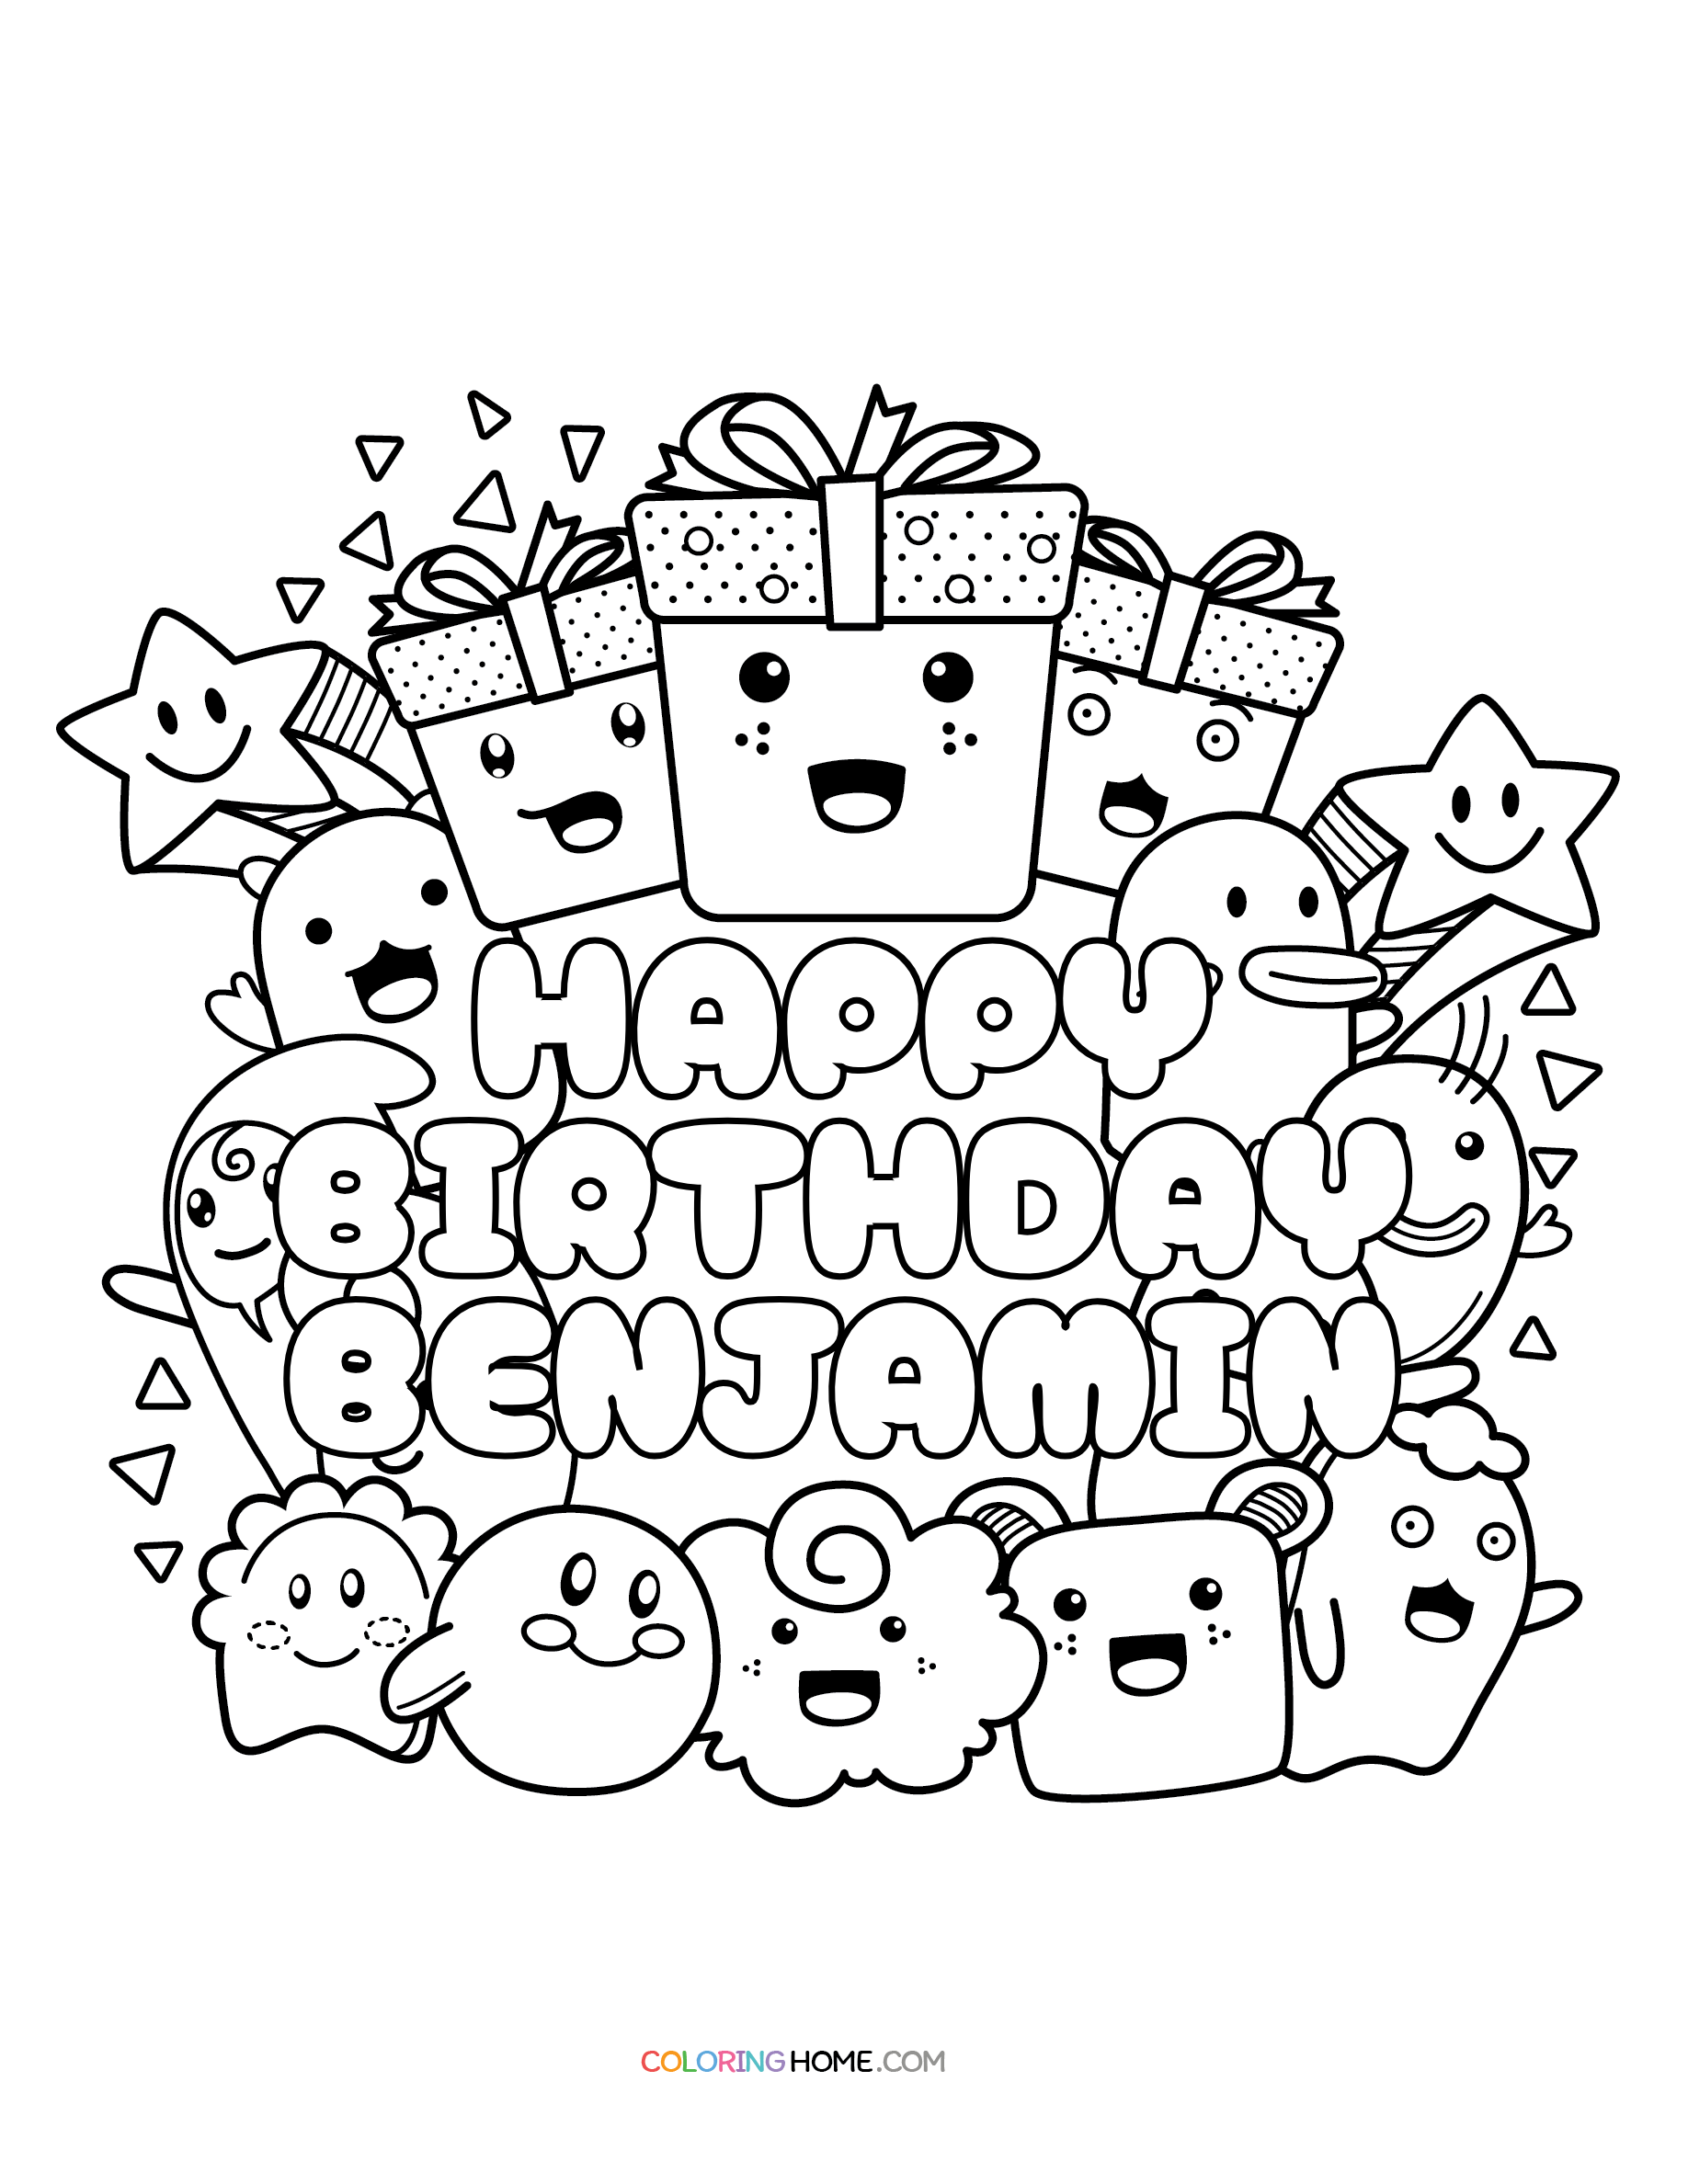 Happy Birthday Benjamin coloring page